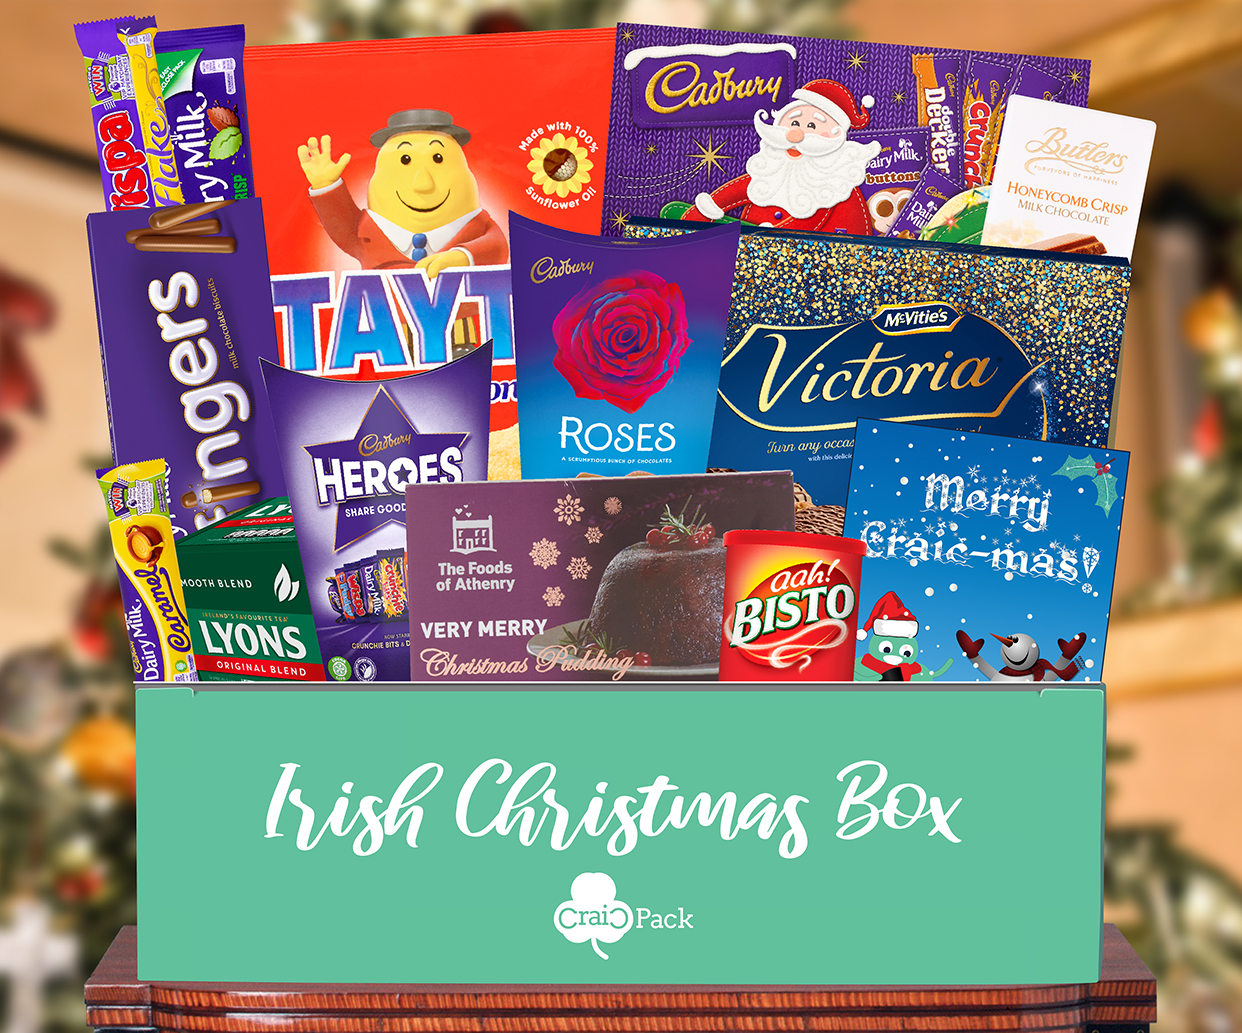 Craicpack Irish Christmas Box